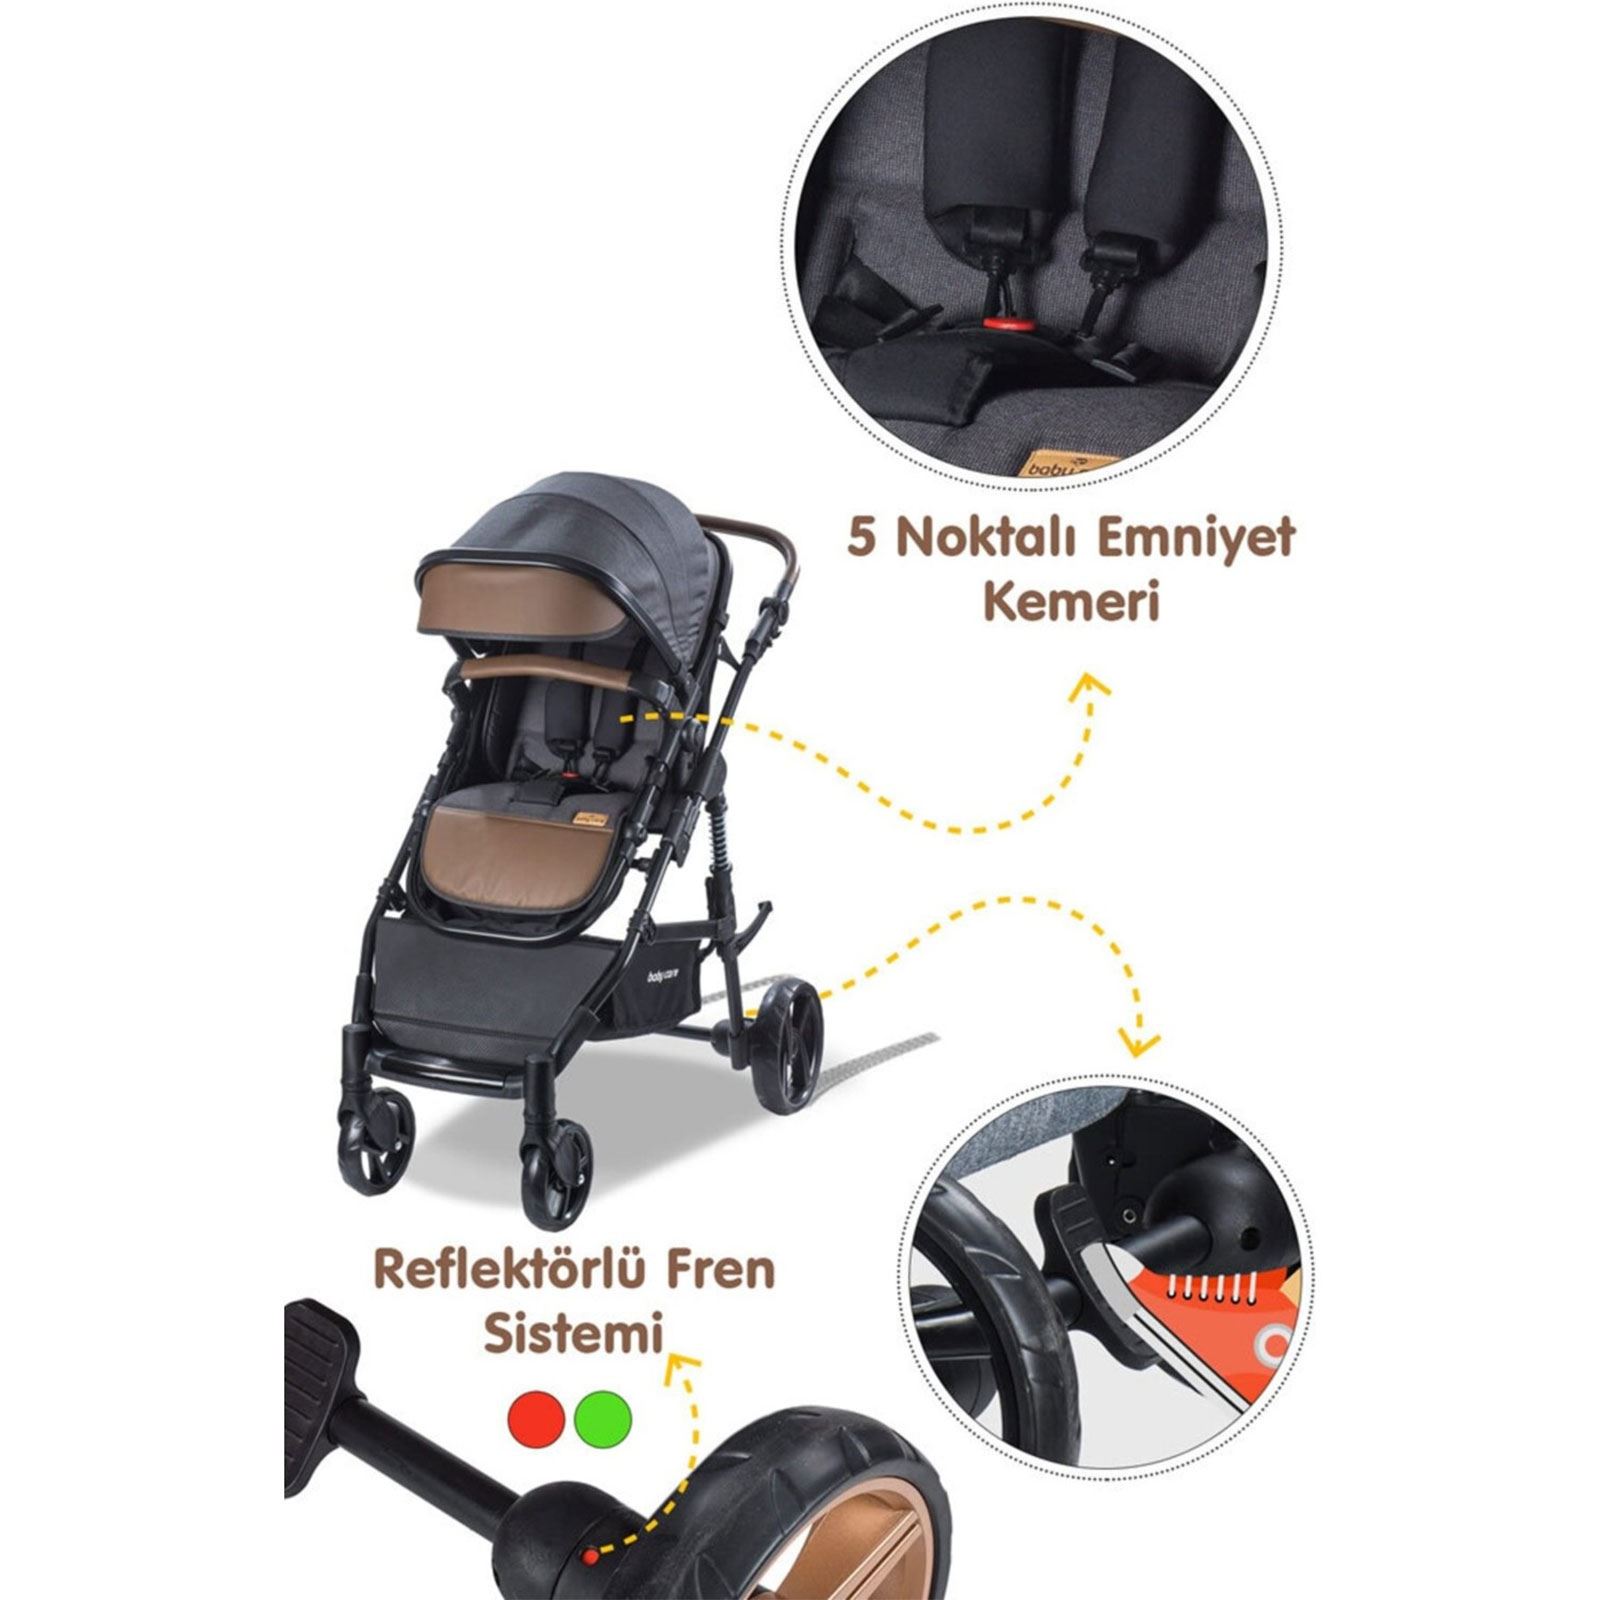 Babycare Bora Cross Travel Sistem Bebek Arabası Vizon